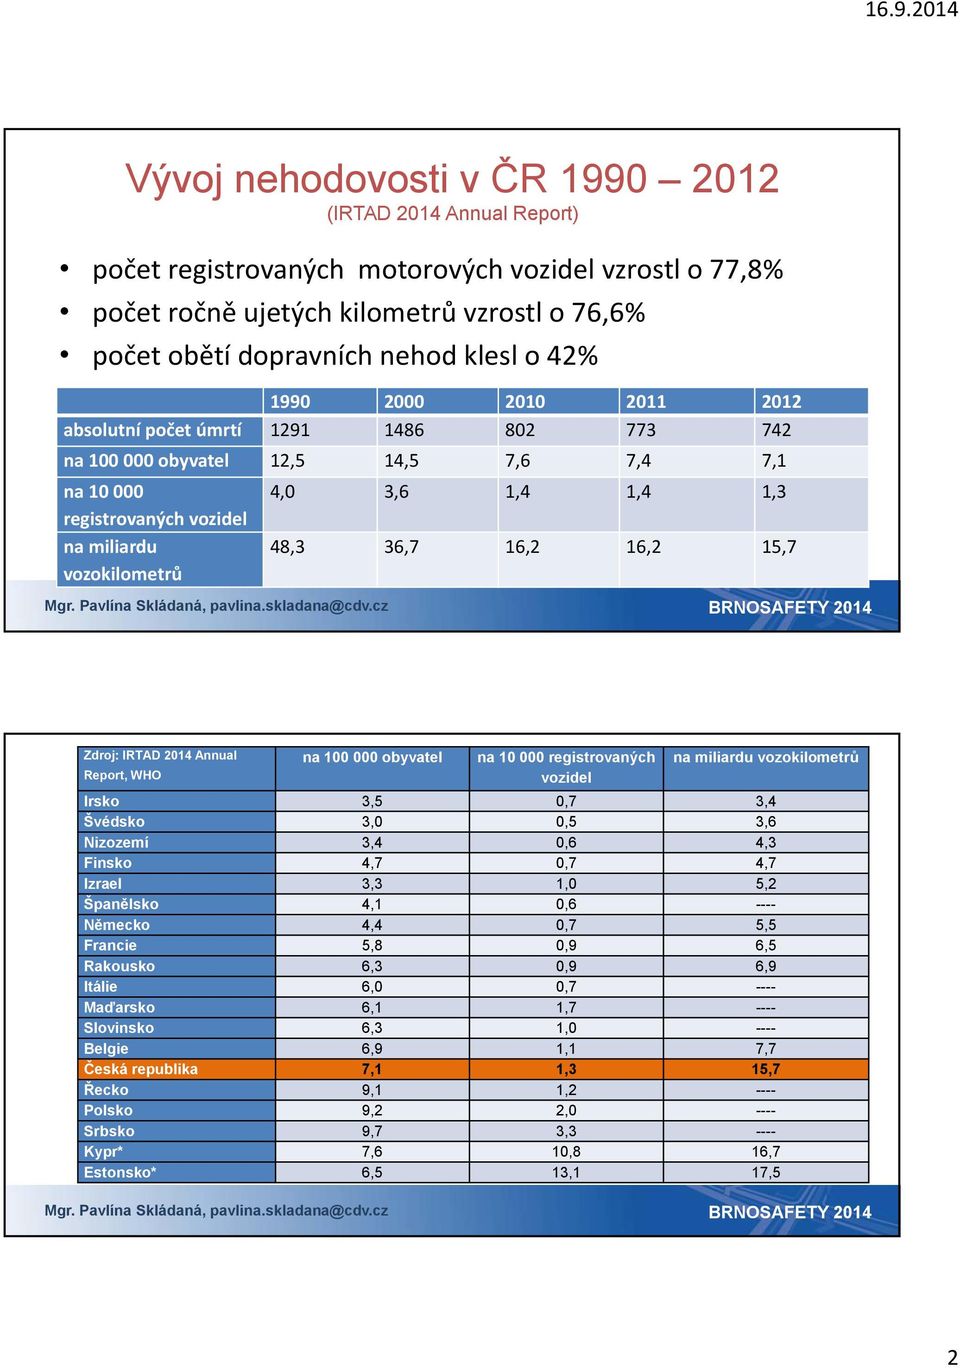 36,7 16,2 16,2 15,7 Zdroj: IRTAD 2014 Annual Report, WHO na 100 000 obyvatel na 10 000 registrovaných vozidel na miliardu vozokilometrů Irsko 3,5 0,7 3,4 Švédsko 3,0 0,5 3,6 Nizozemí 3,4 0,6 4,3